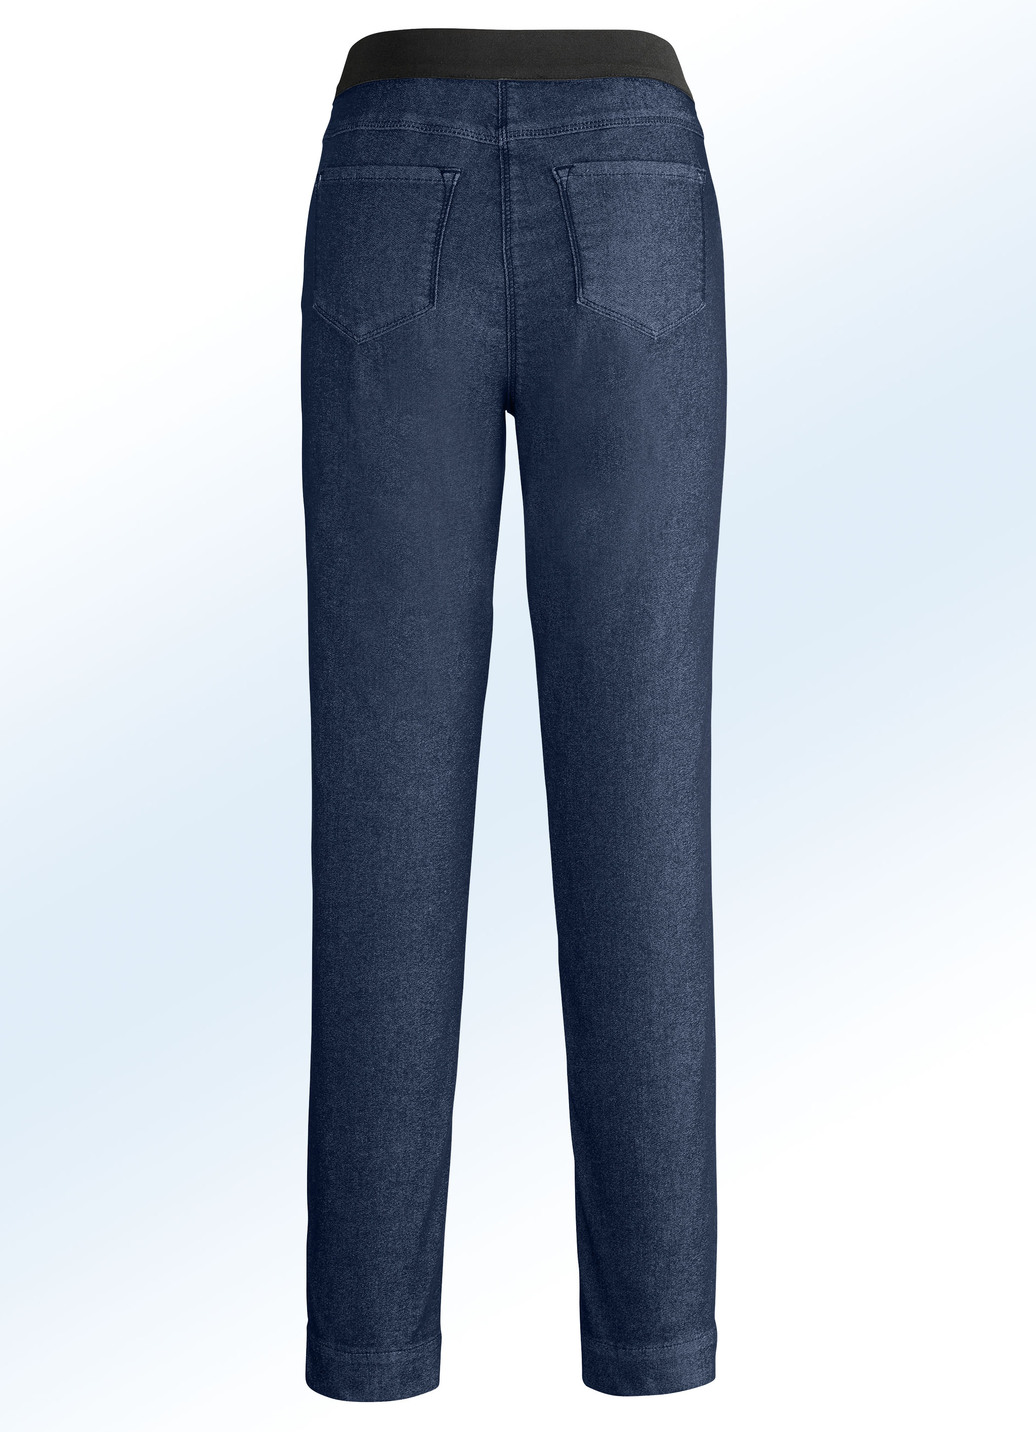 Superbequeme Power-Stretch-Jeans mit spezieller Bundverarbeitung, Dunkelblau, Größe 20 von COSMA